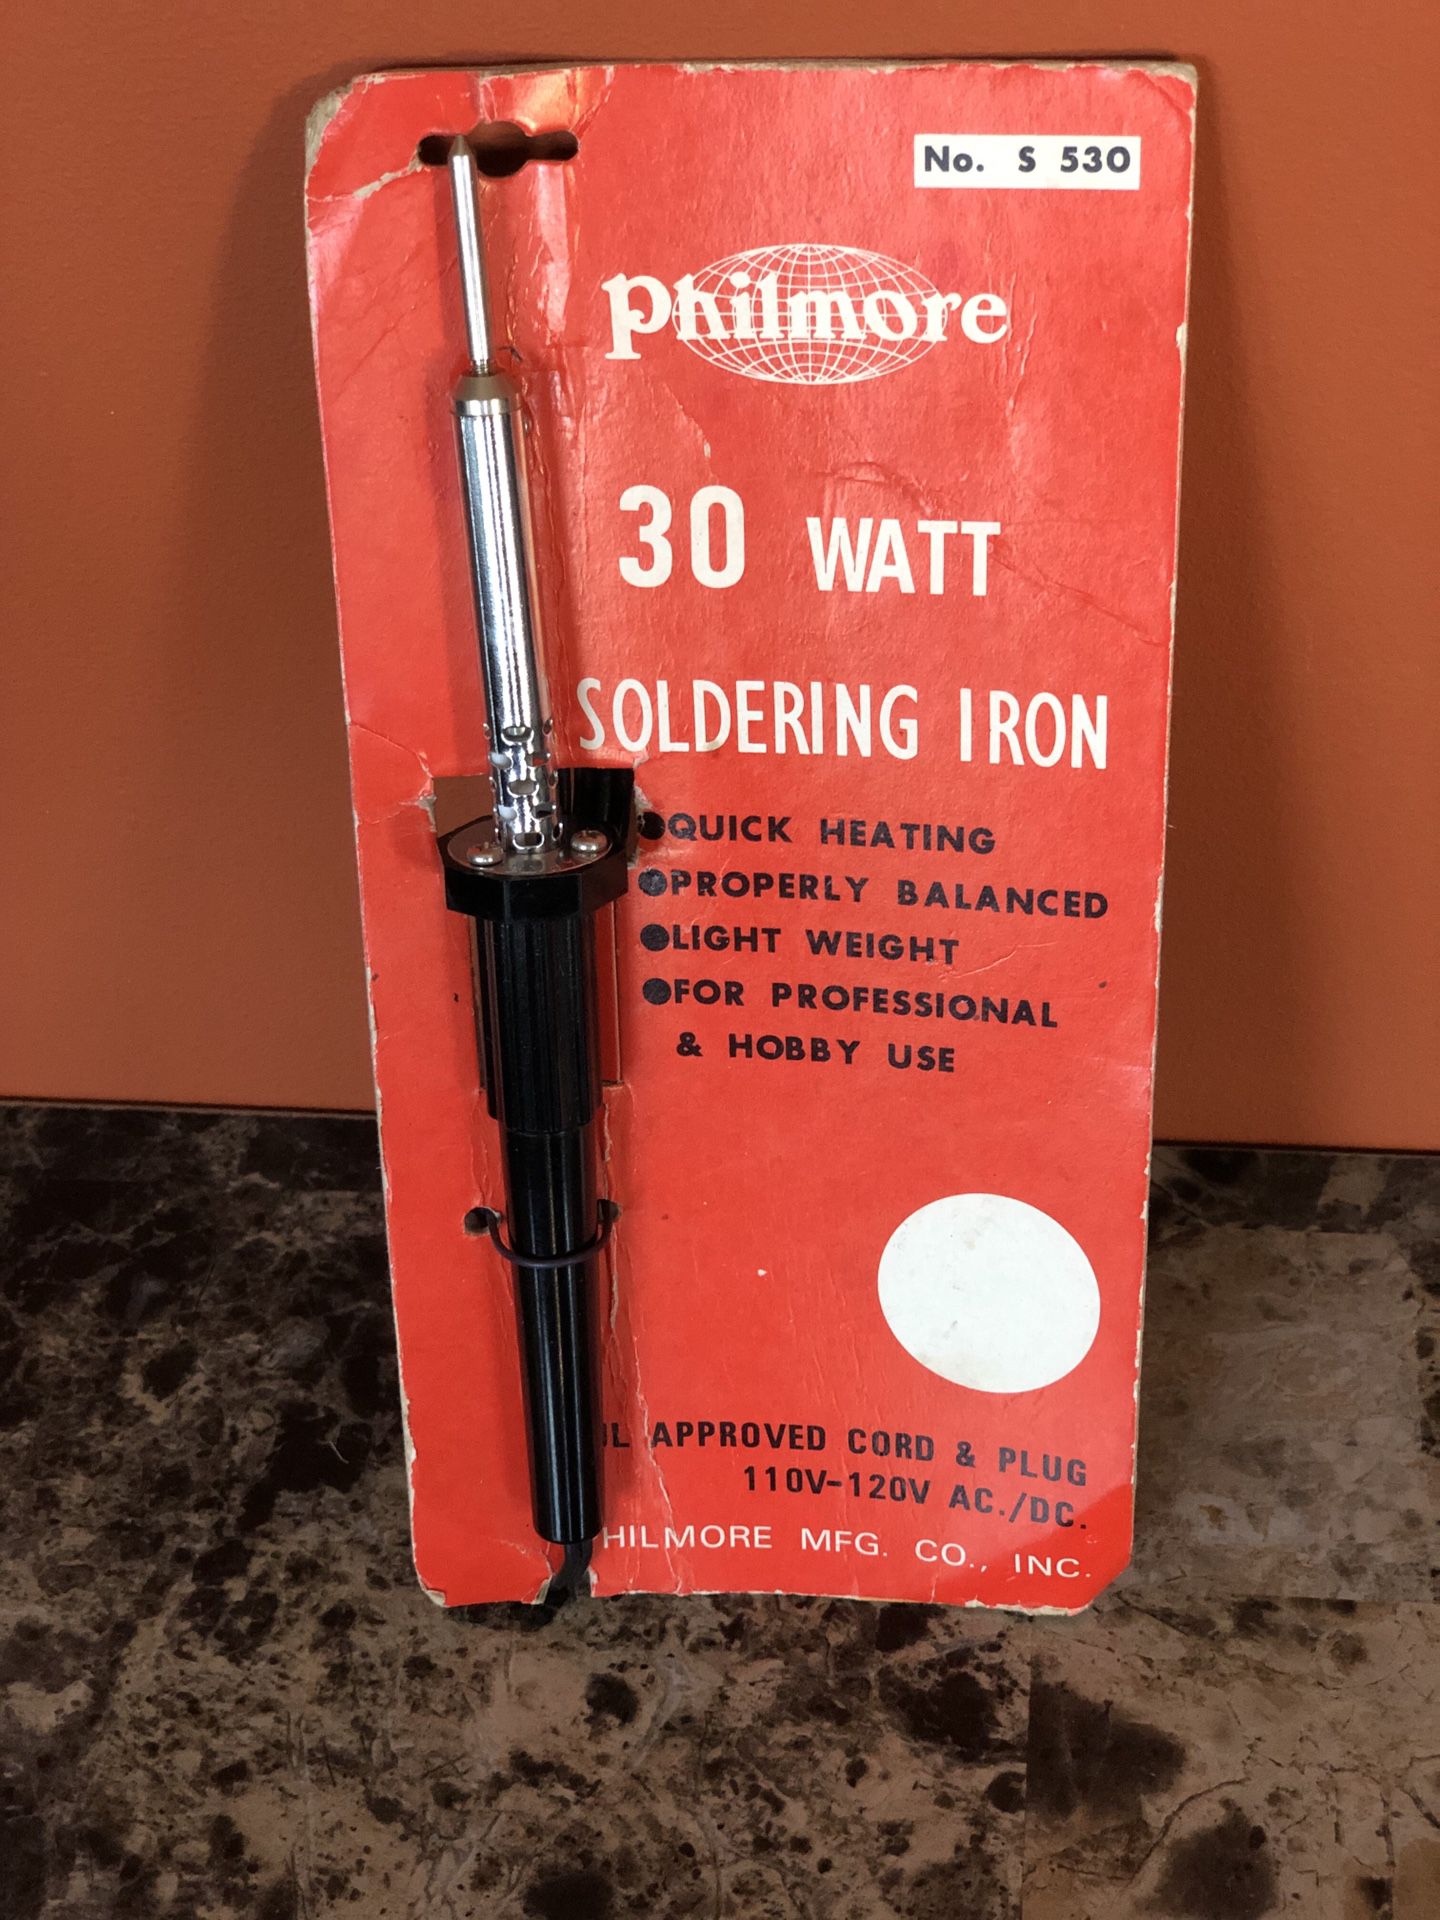 Philmore 30 Watt Soldering Iron